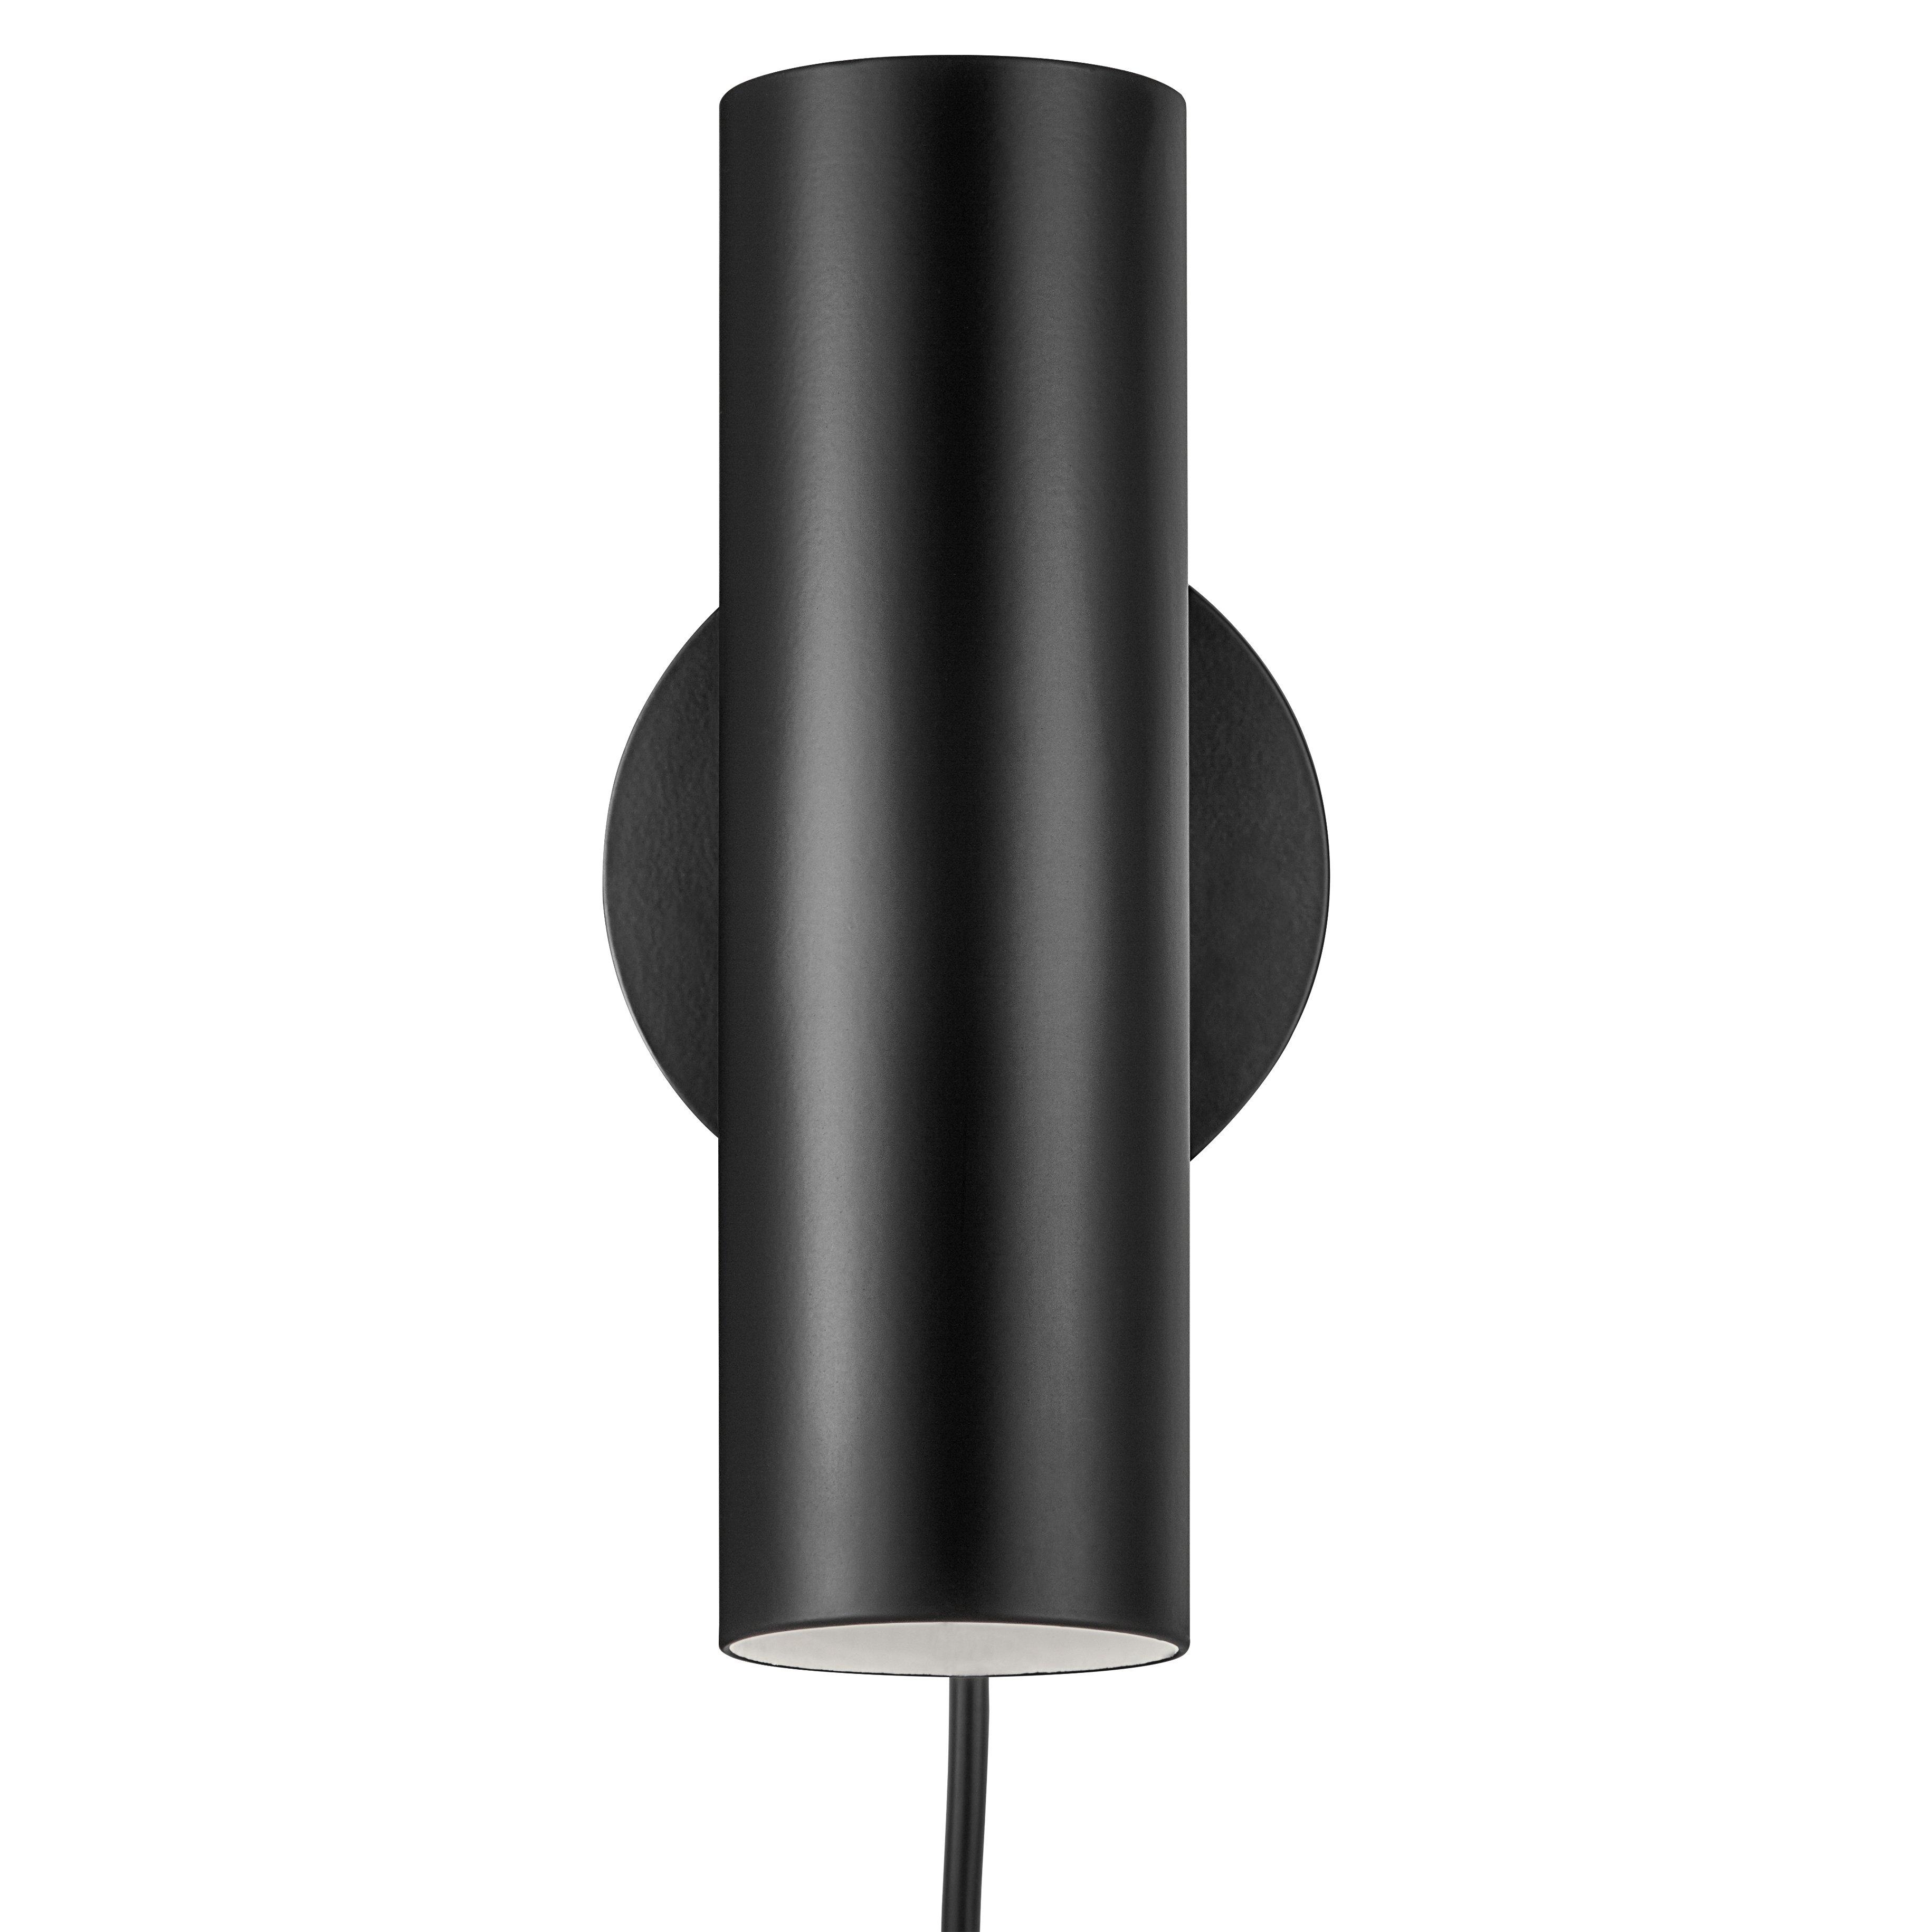 DFTP Mib 6 Tiltable Indoor Living Bedroom Metal Wall Light in Black (Diam) 10cm